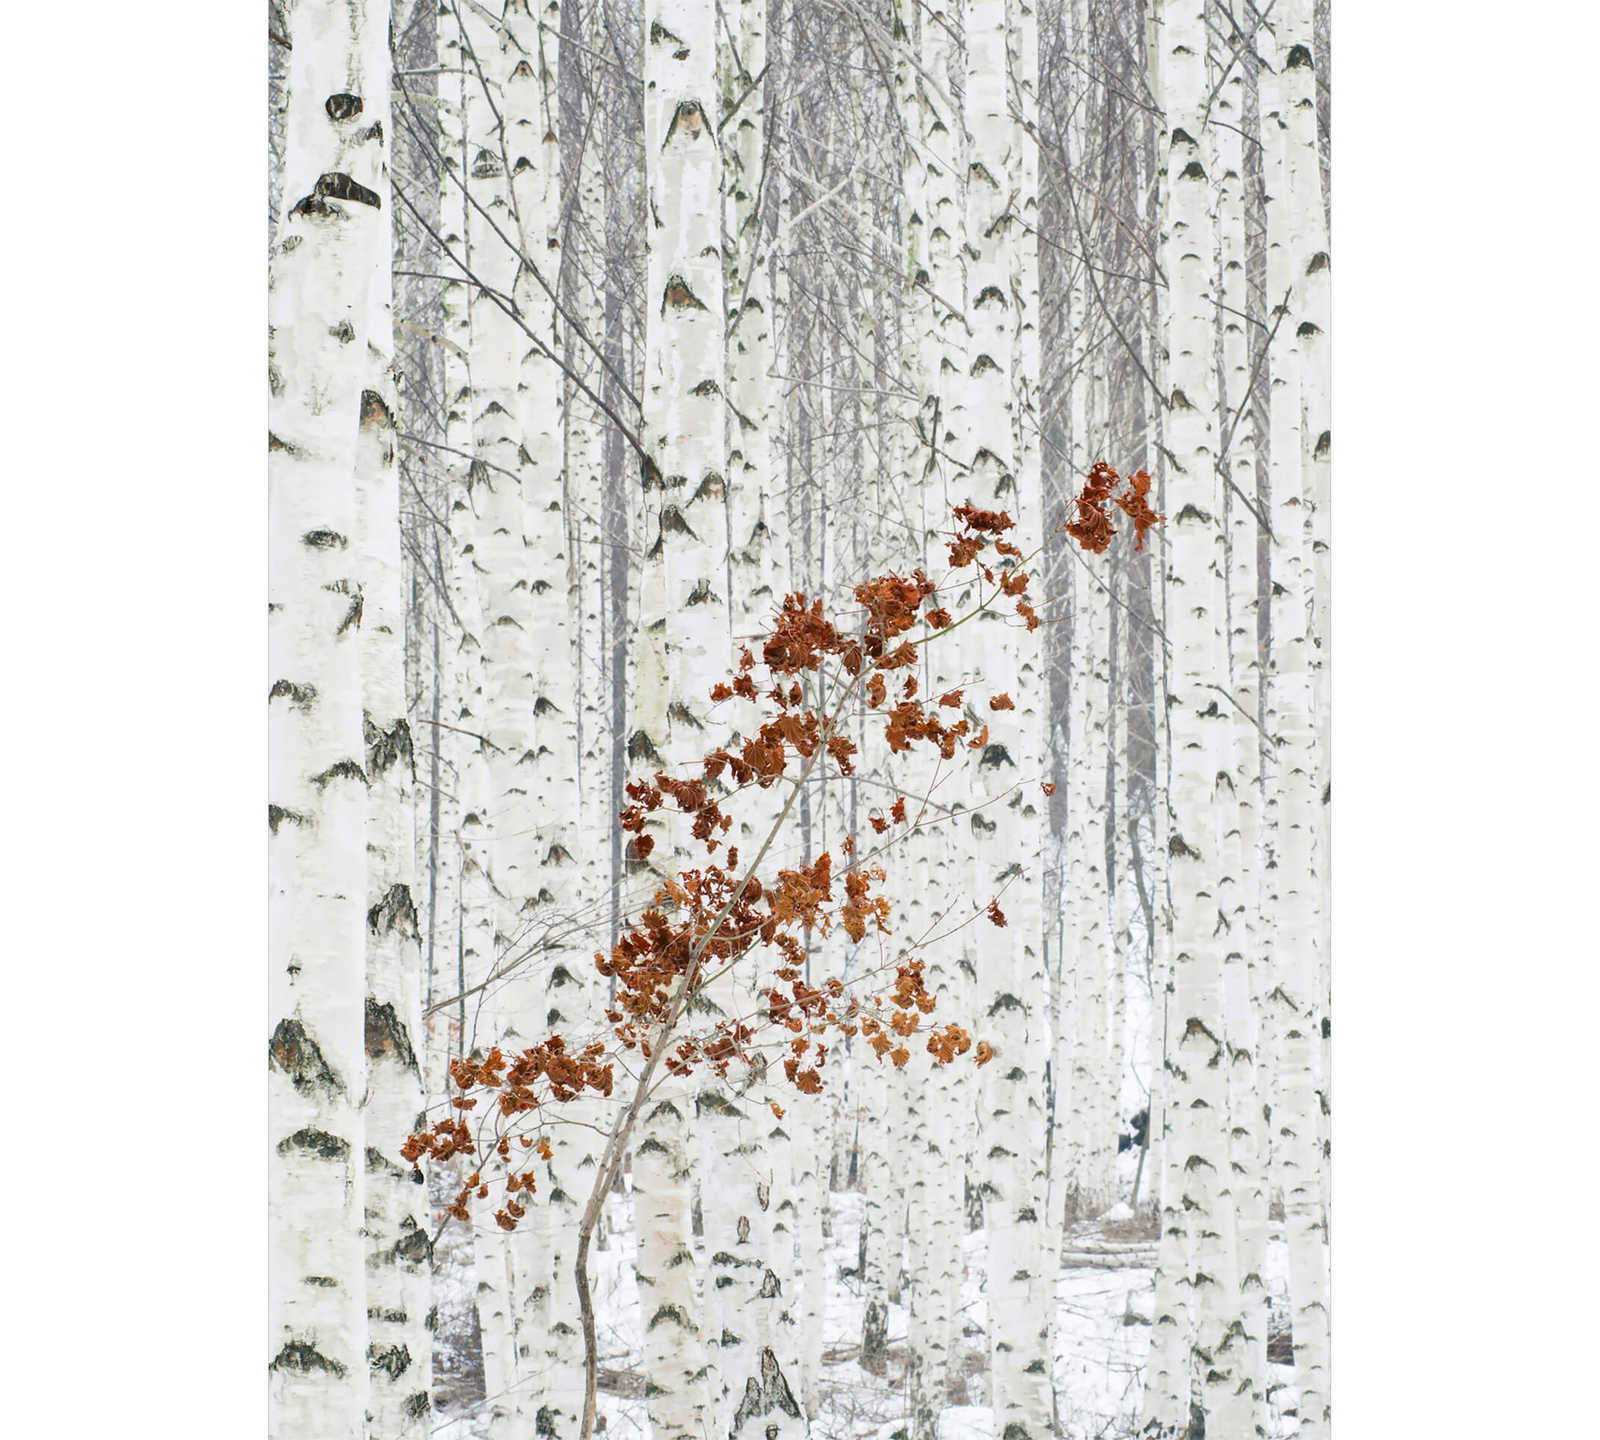 Fototapete Wald aus Birken – Weiß, Grau, Braun
